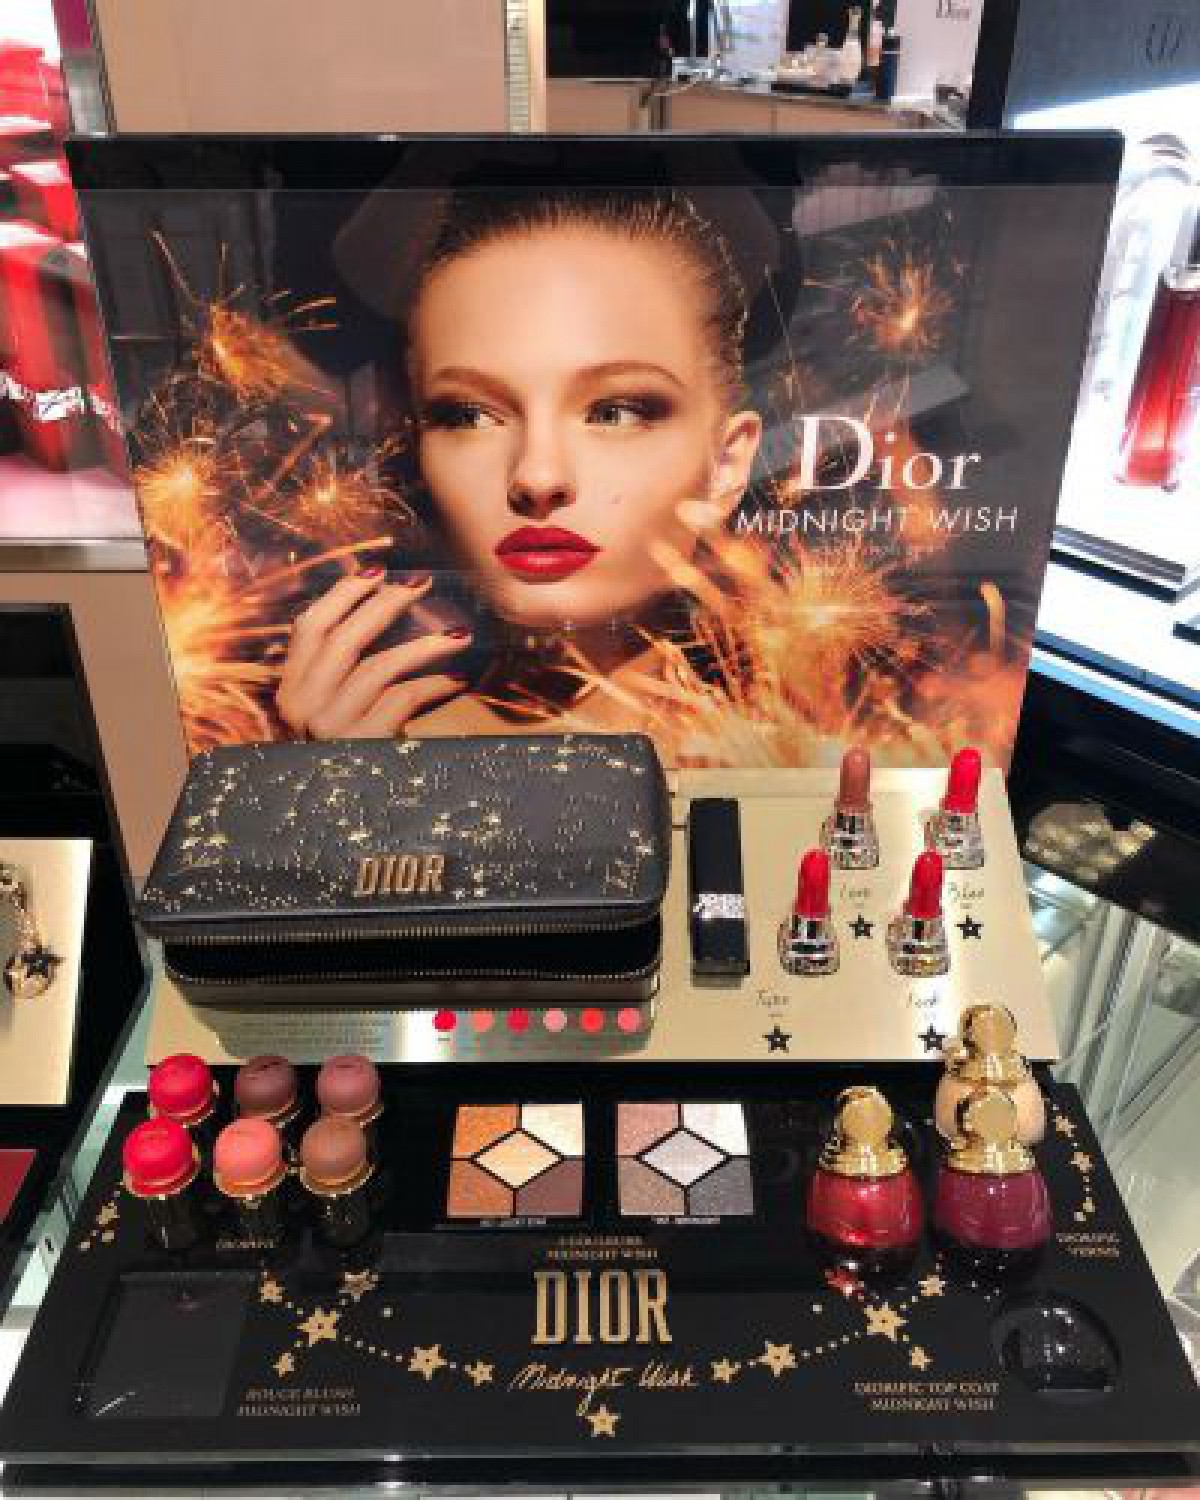 【クリスマスコフレ2018】散りばめられた星に願いを込めて…Dior(ディオール)のクリスマス限定コスメ情報 | コスメニュース『びぃらぼ』